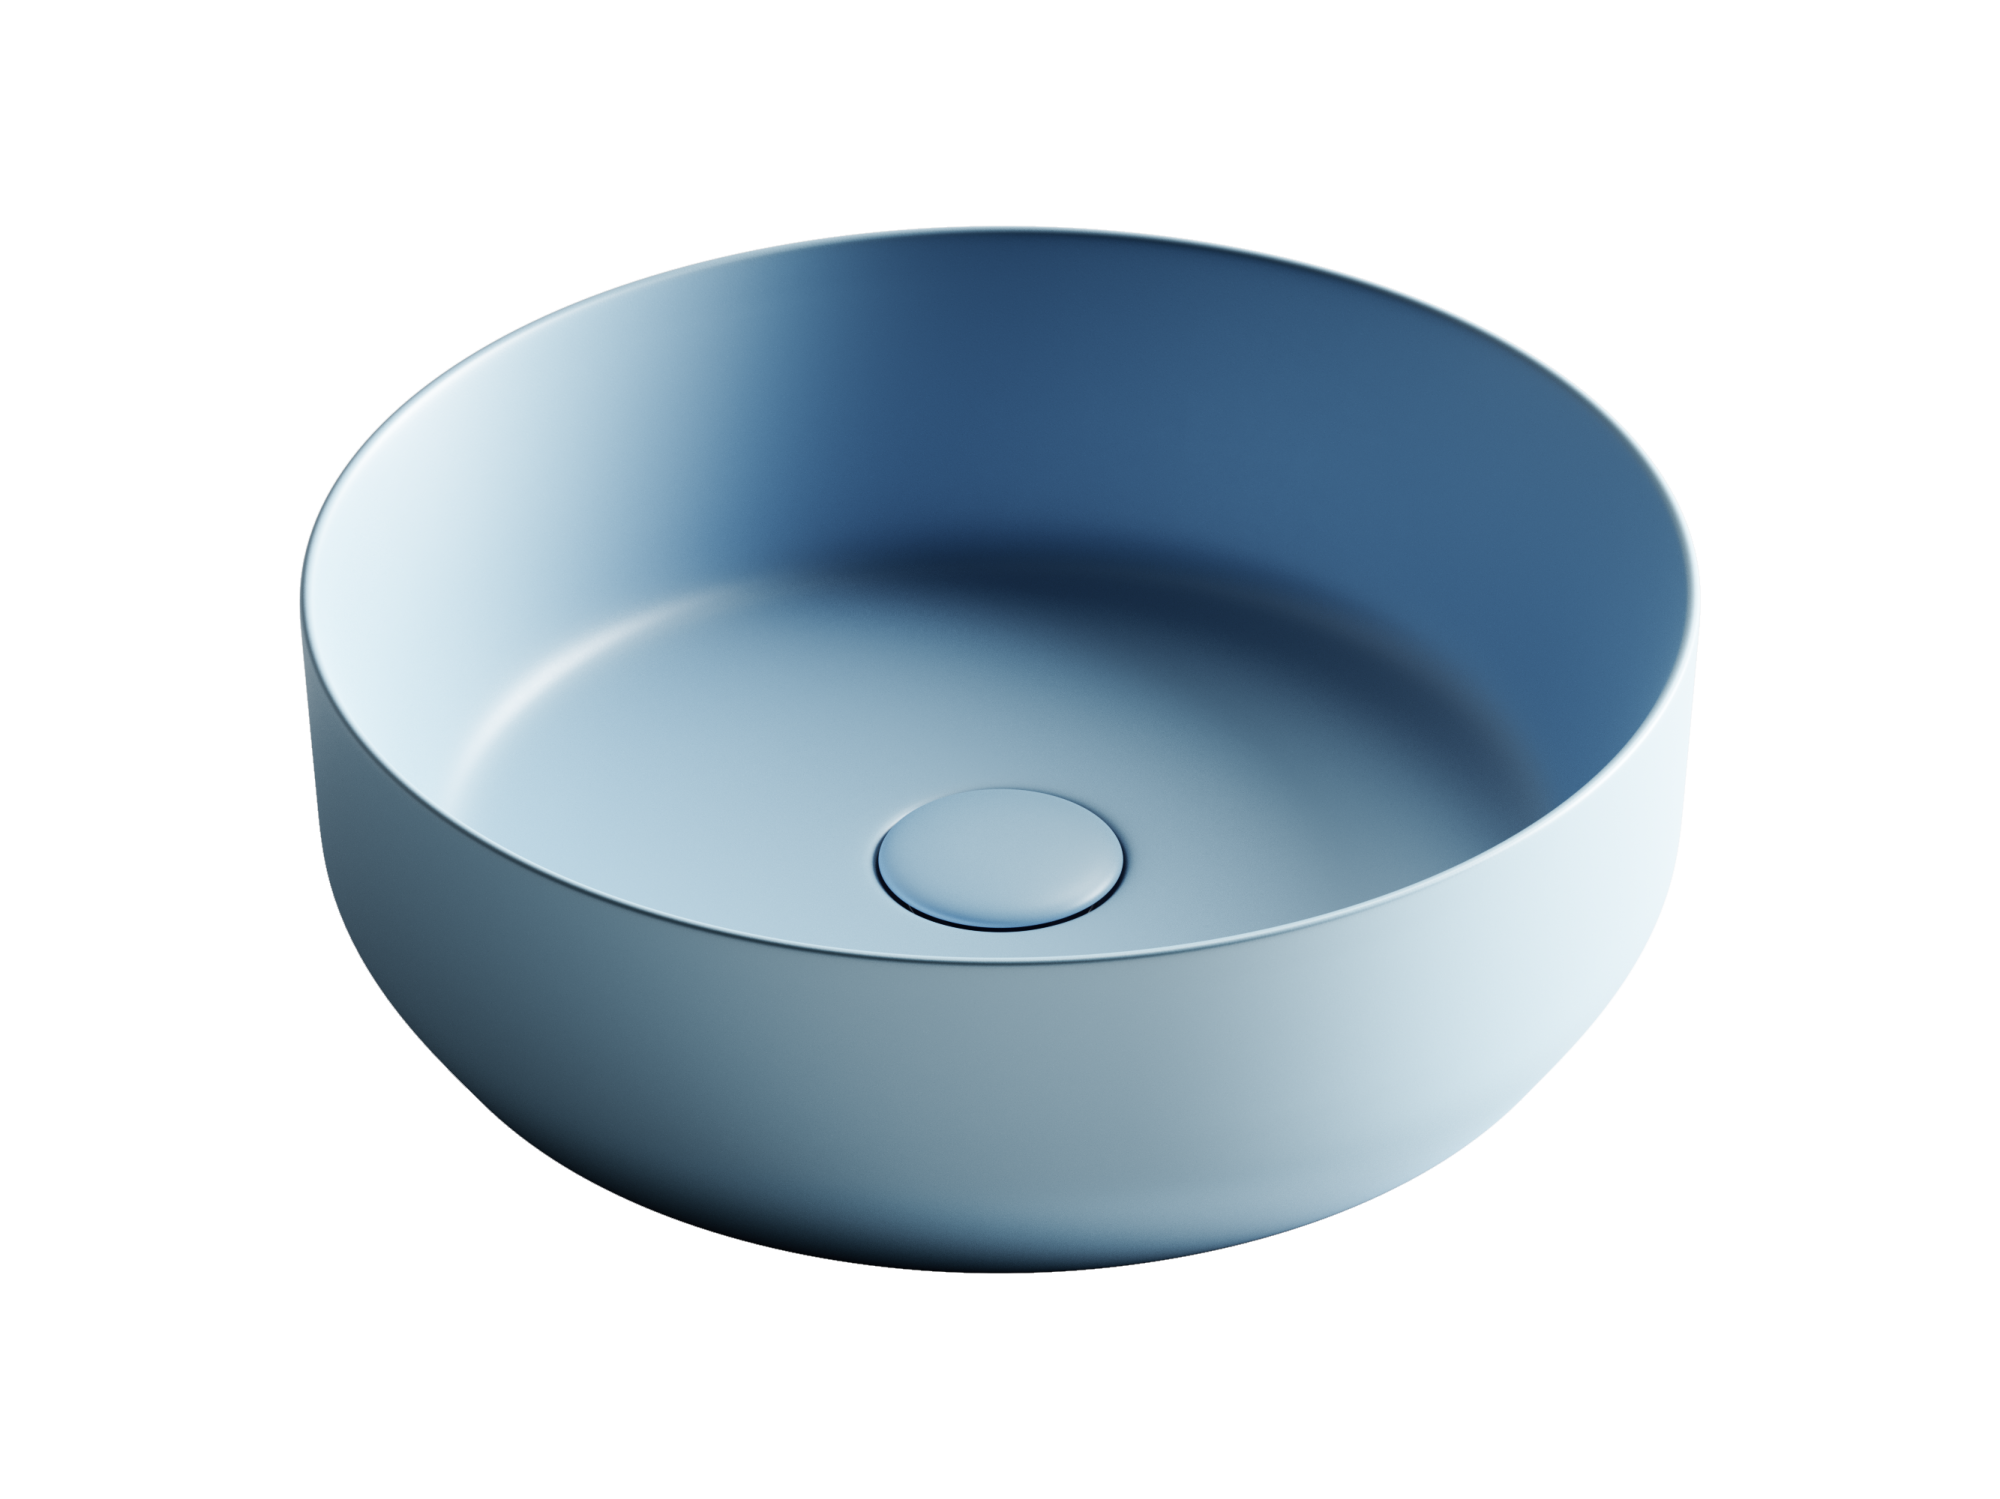 CN6022ML Умывальник чаша накладная круглая (цвет Голубой Матовый) Element 390*390*120мм